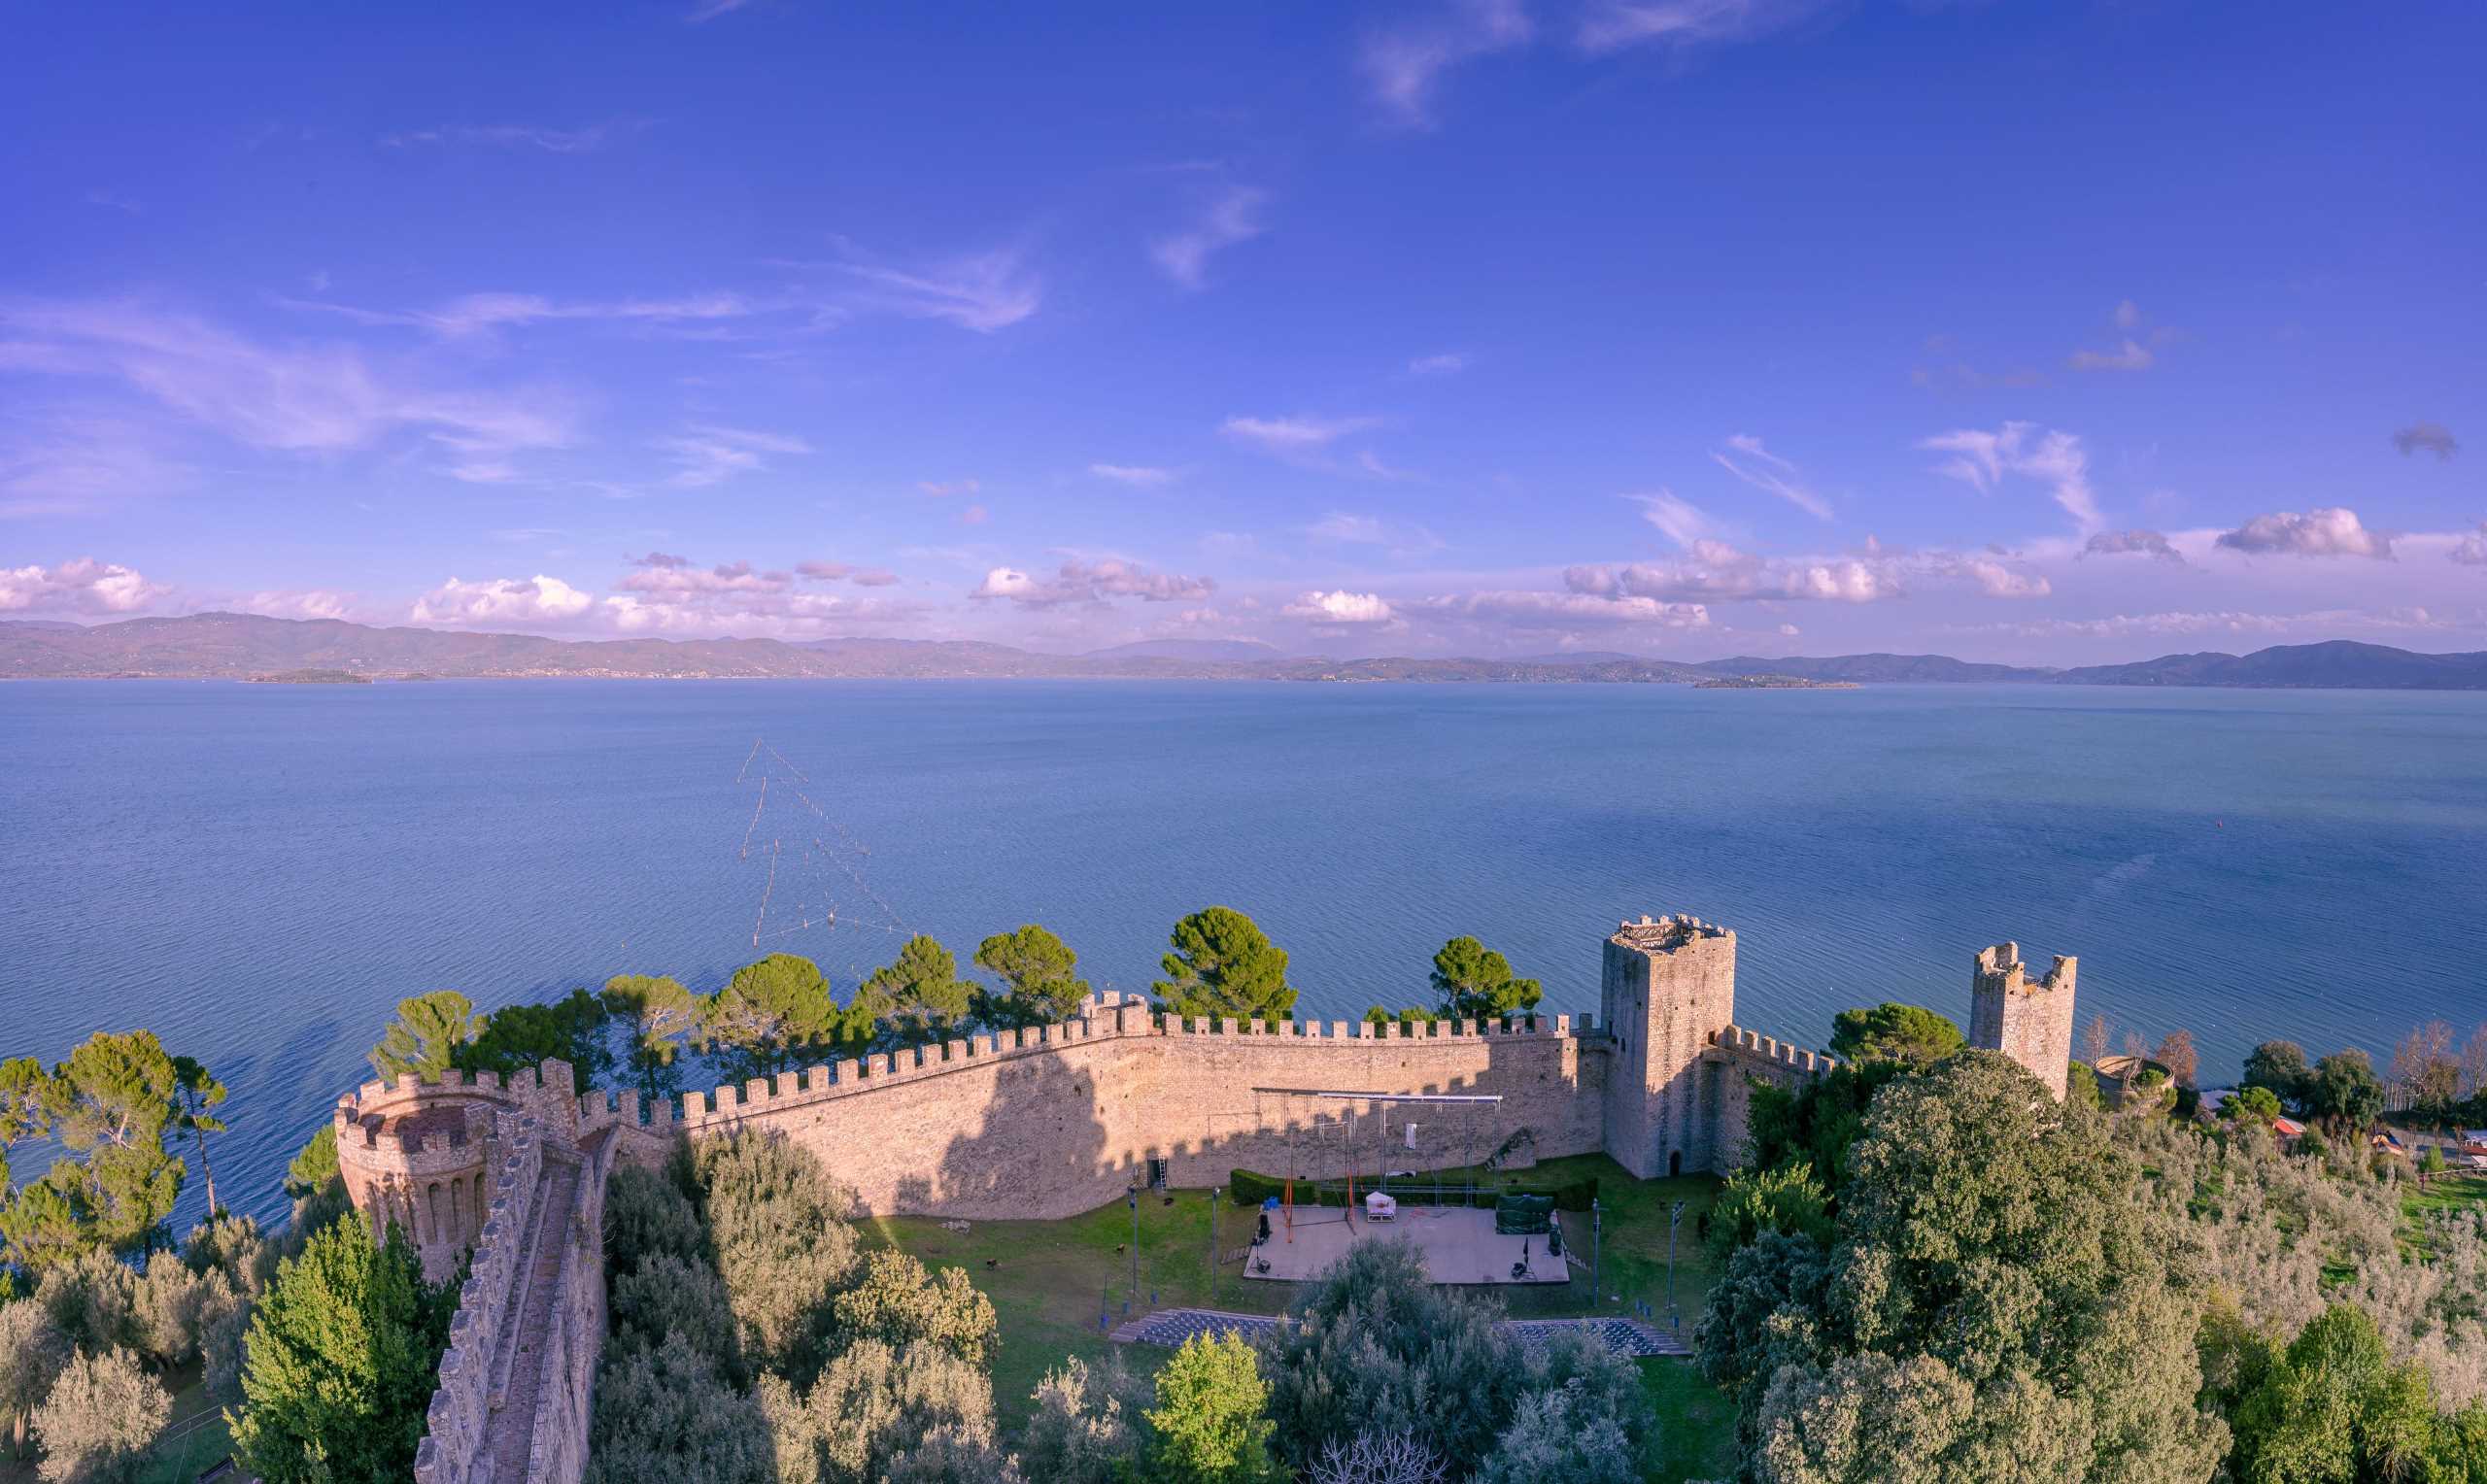 Lake Trasimeno seen from the fortress of Castiglione del Lago